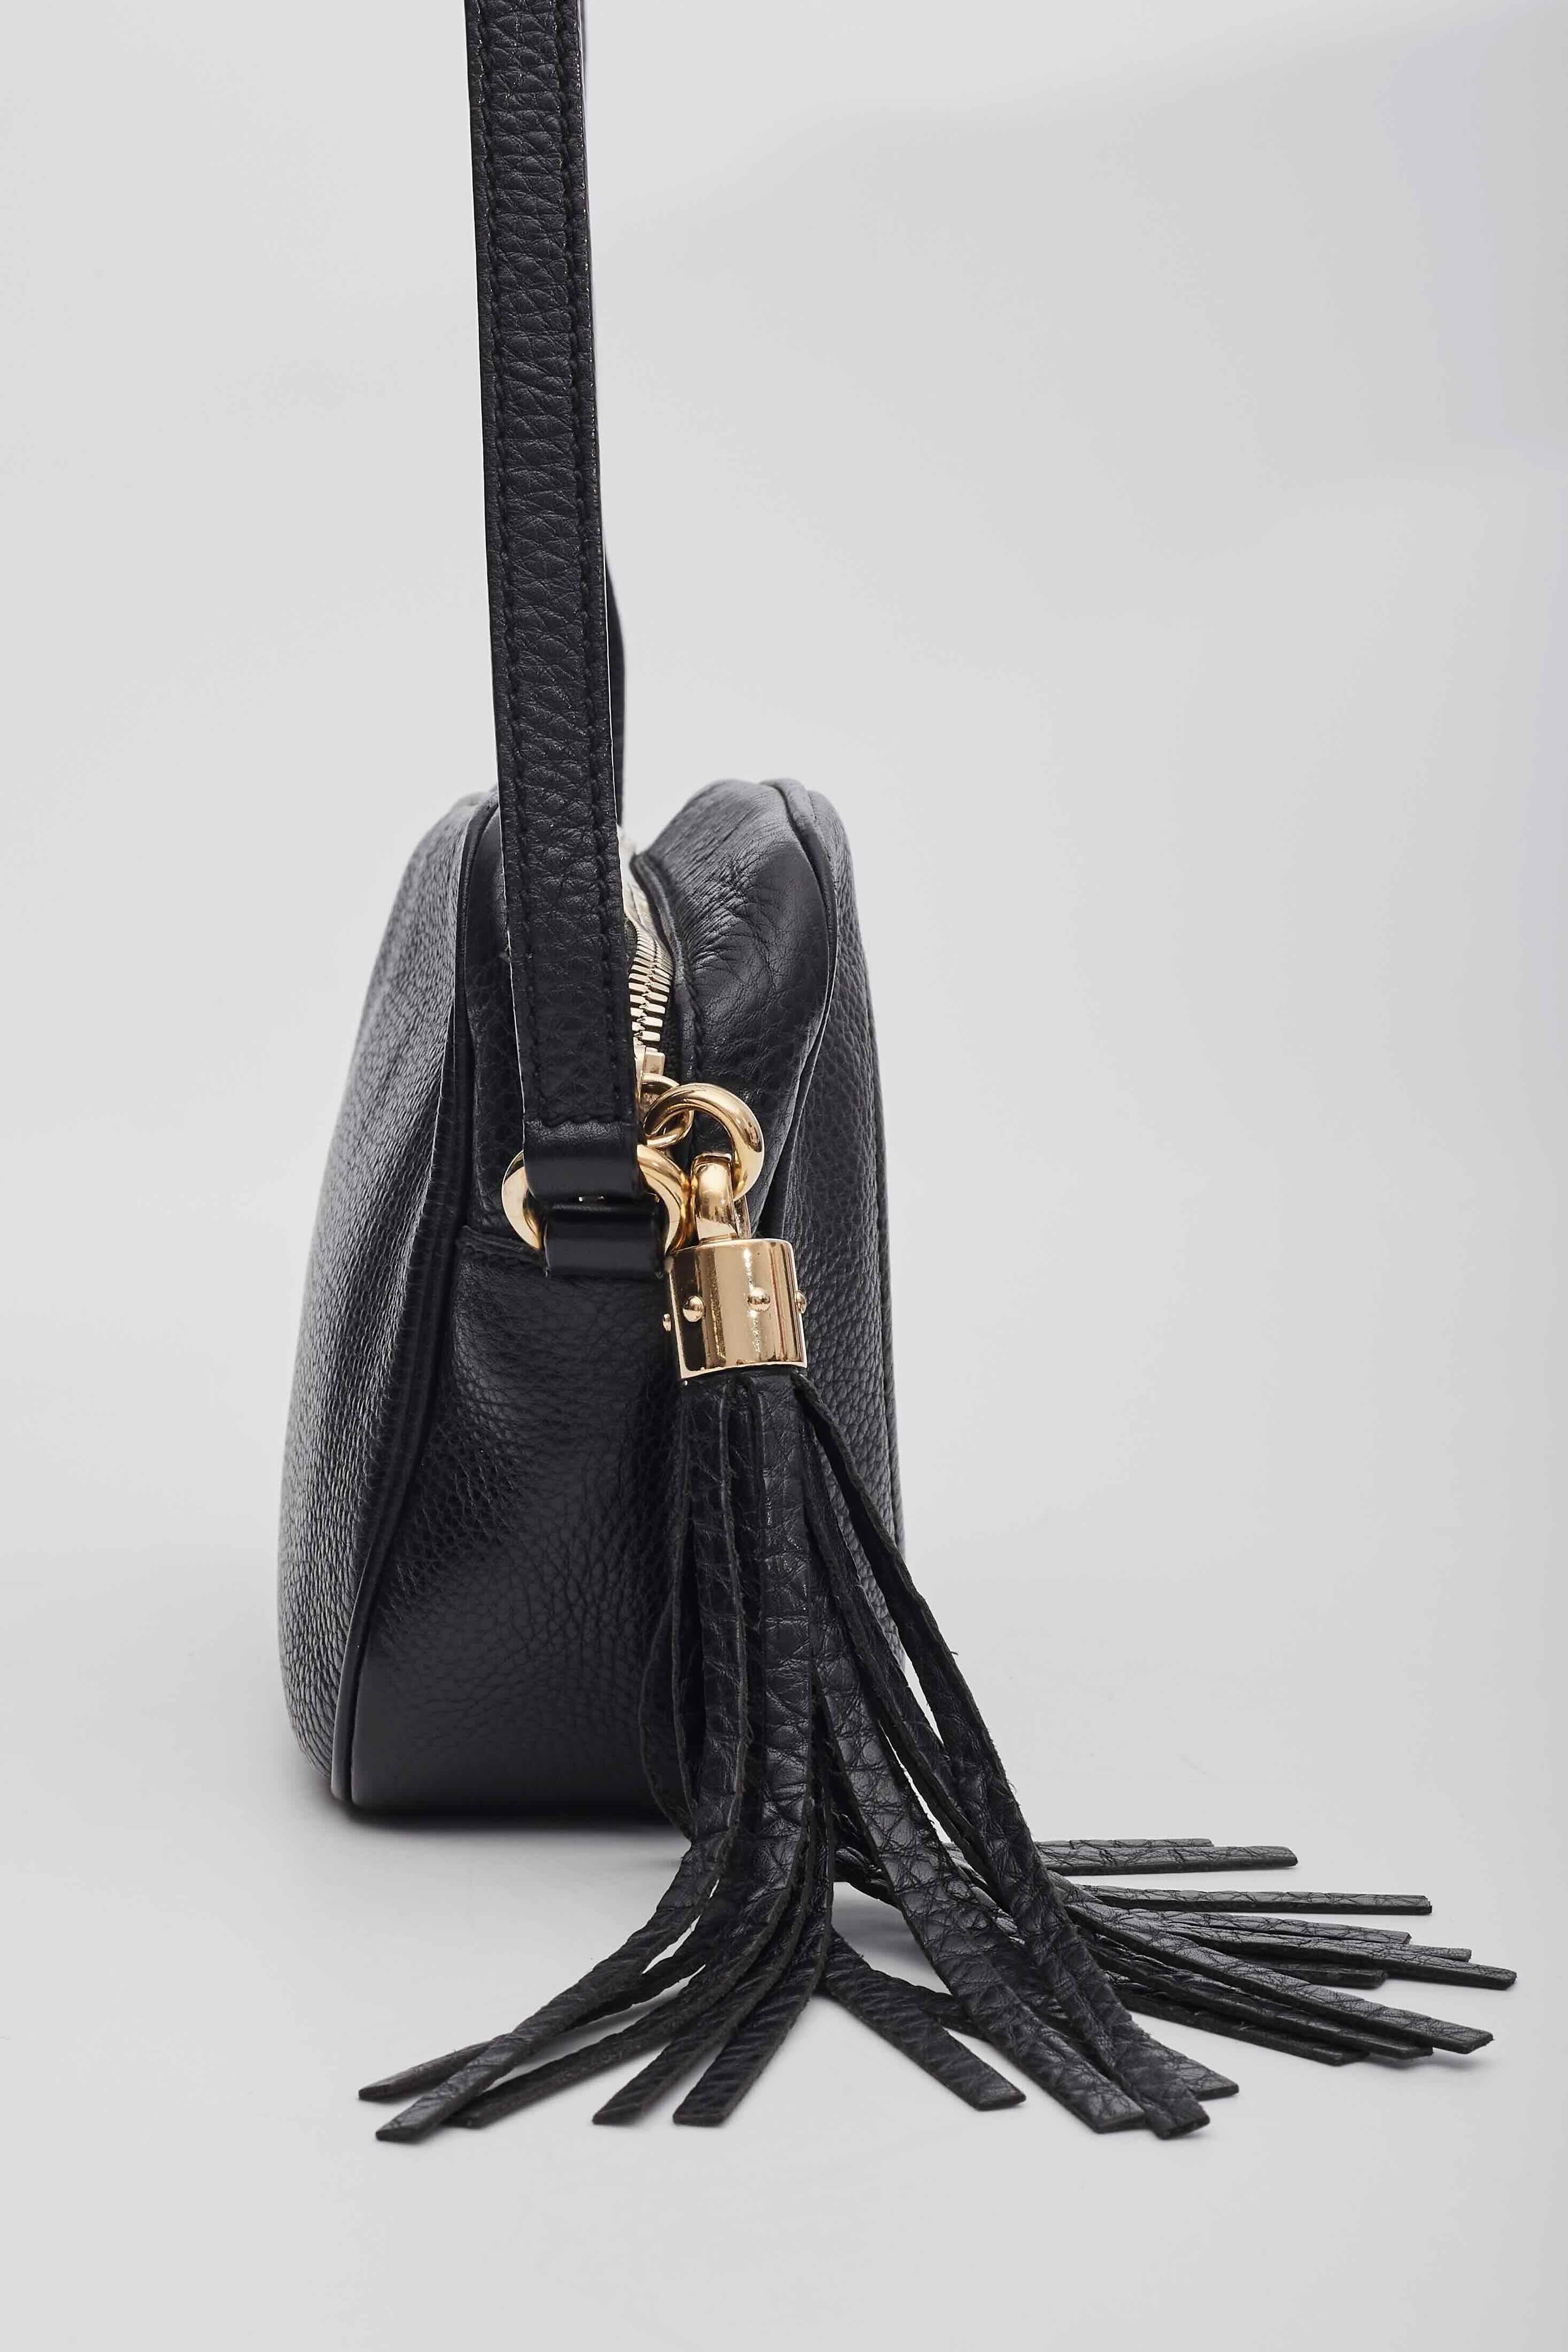 Gucci Soho Disco Black Leather Shoulder Bag For Sale 1